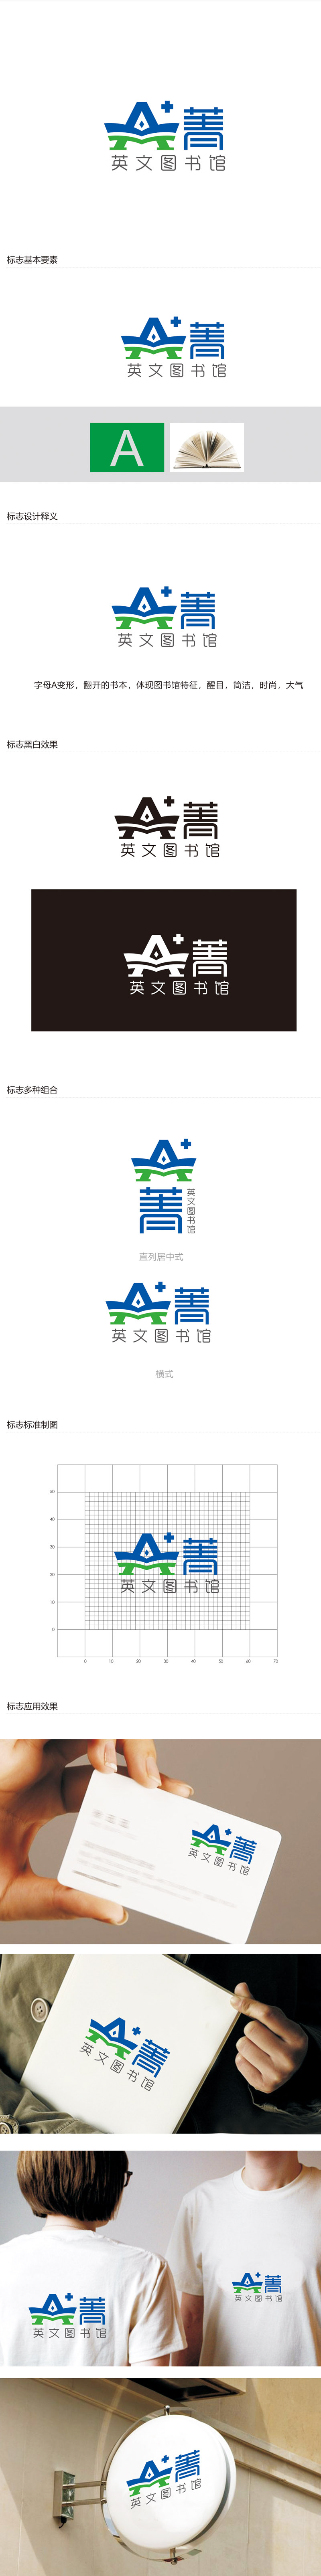 赵鹏的A菁英文图书馆logo设计